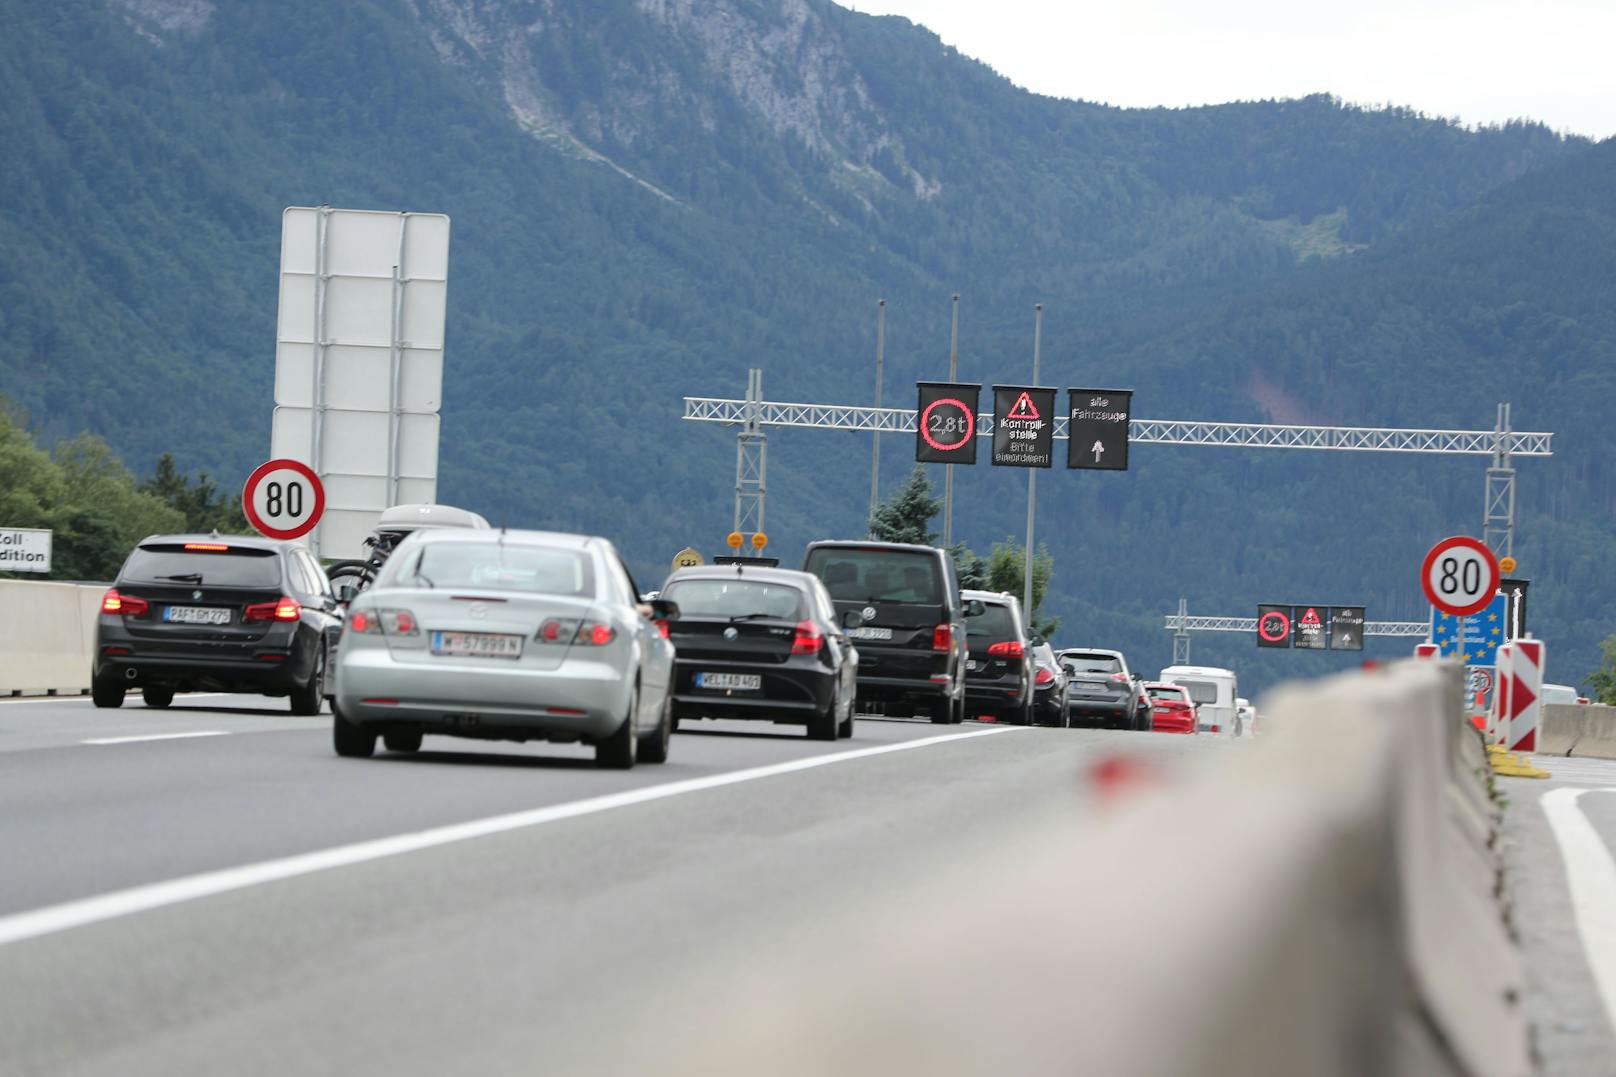  Grenzübergang Salzburg Walserberg: Neue harte Einreiseregeln kommen, kein Freitesten mehr möglich -  die Quarantäne wird immer 10 Tage andauern, auch bei negativem Coronatest.